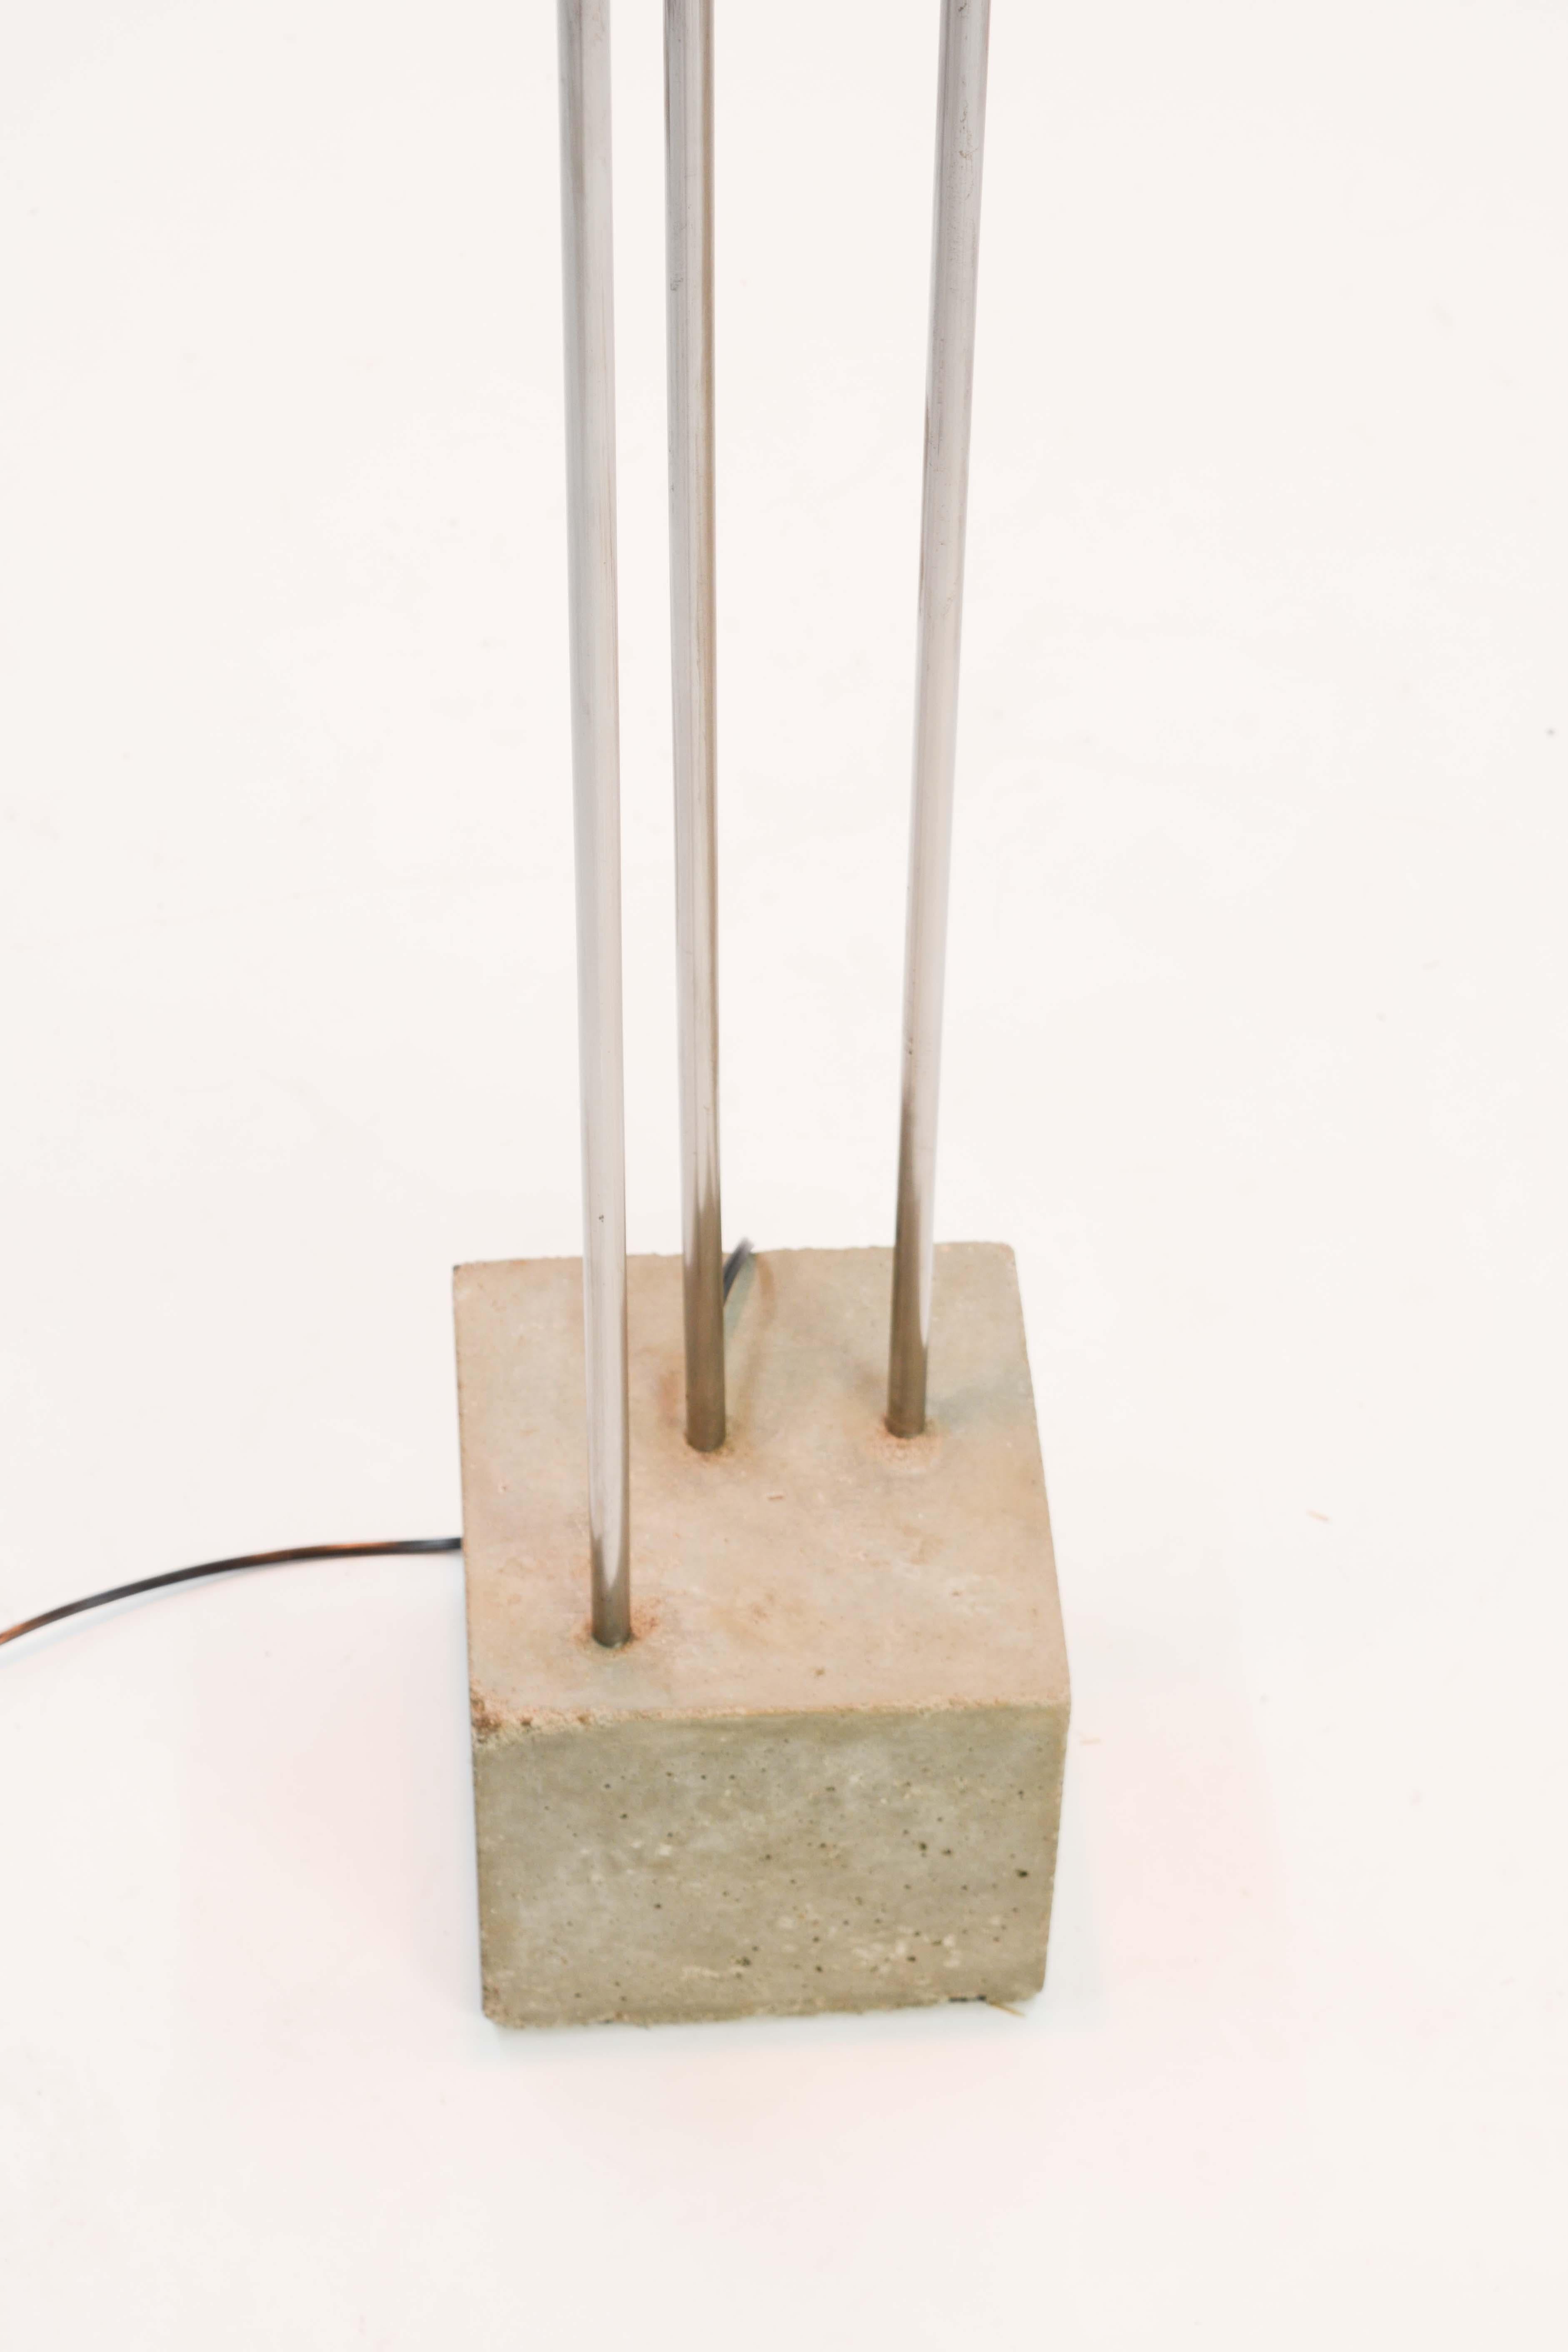 Aluminum Frank Lloyd Wright Inspired Floor Lamp by Lighting Artisan Jamie Voilette For Sale